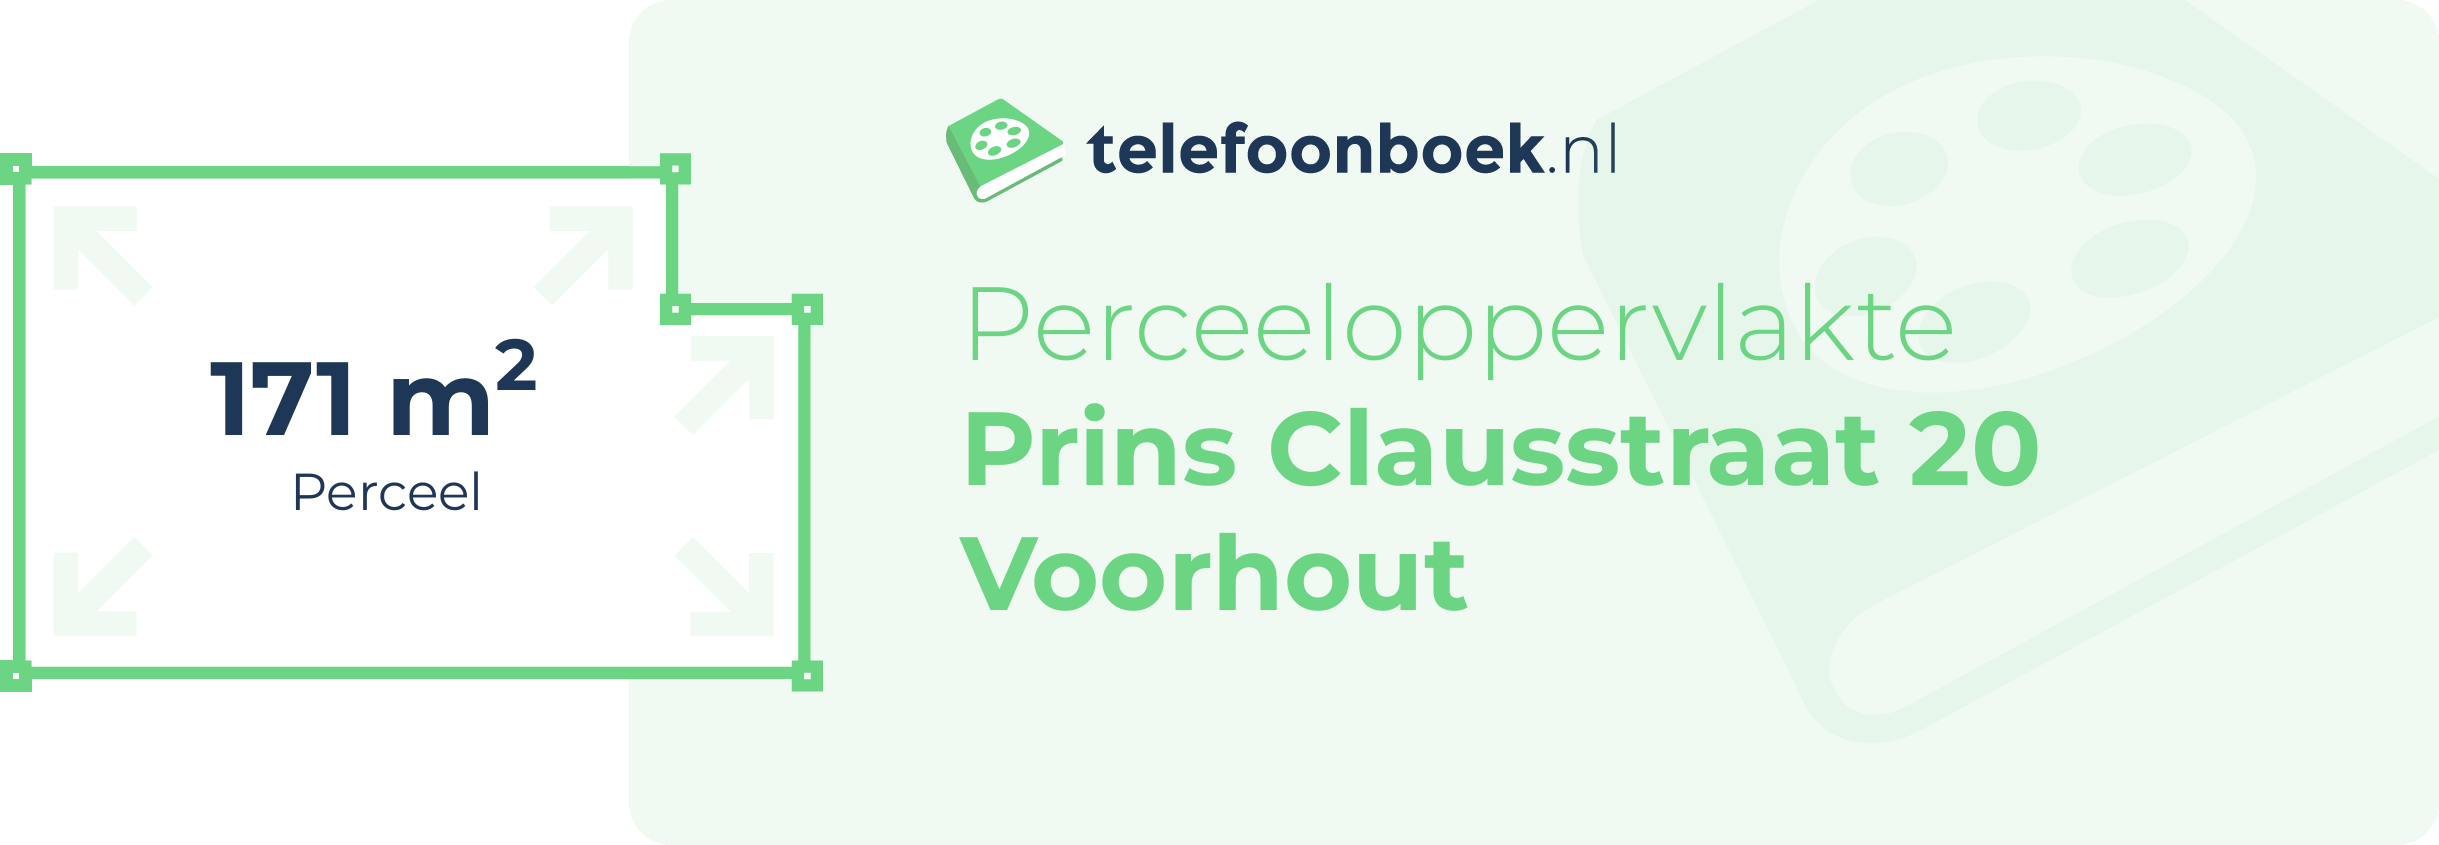 Perceeloppervlakte Prins Clausstraat 20 Voorhout